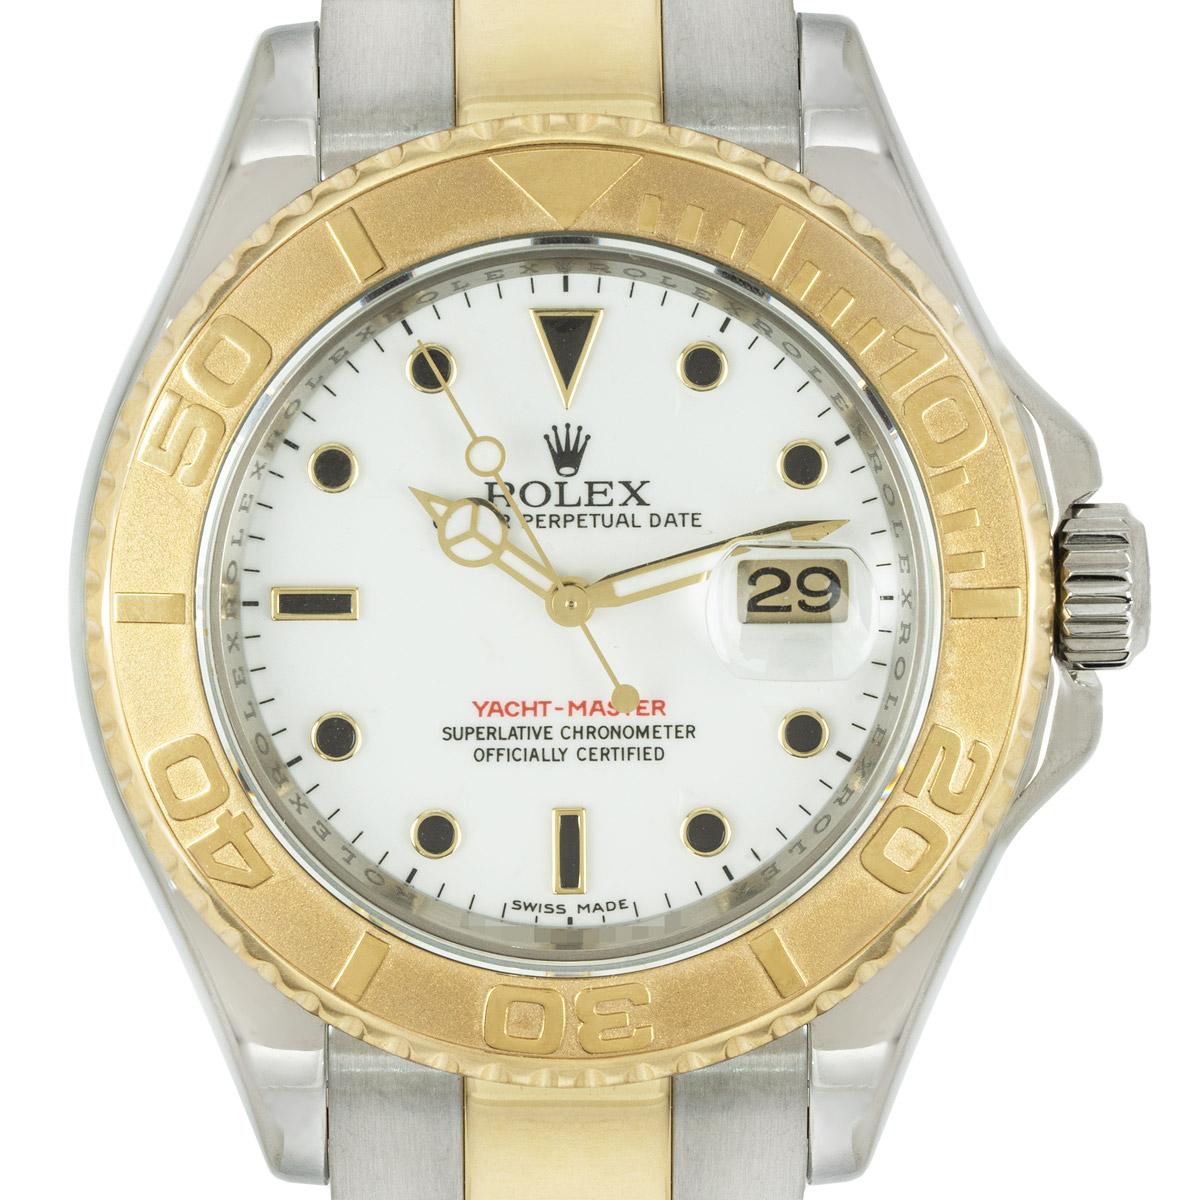 Eine Yacht-Master für Herren aus Edelstahl und Gelbgold von Rolex. Sie verfügt über ein weißes Zifferblatt mit applizierten Stundenmarkierungen, eine Datumsanzeige und eine in beide Richtungen drehbare Lünette mit 60-Minuten-Teilung.

Ausgestattet